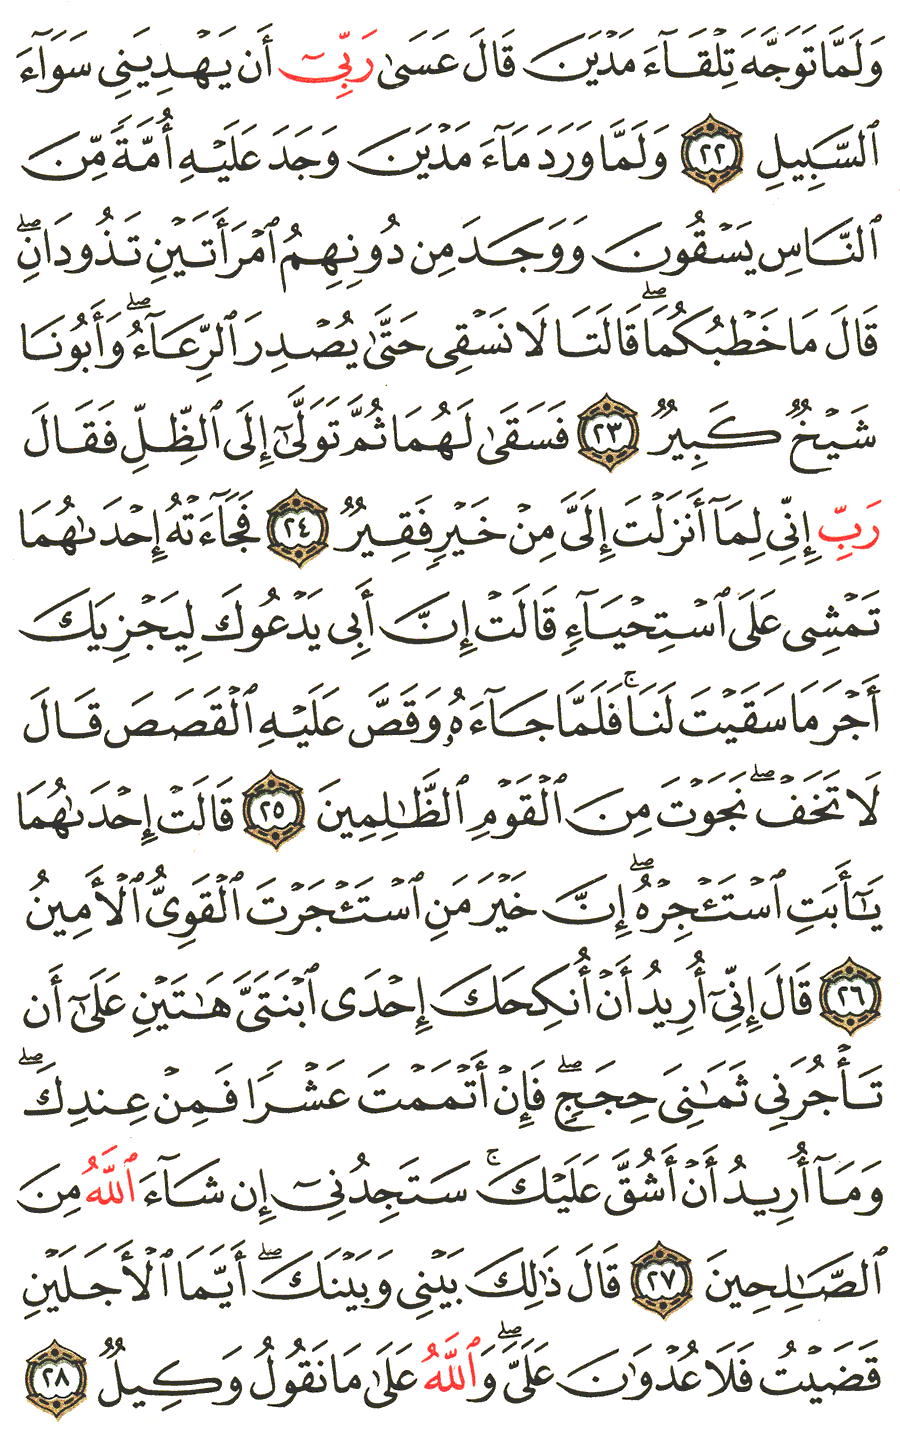 الصفحة رقم 388  من القرآن الكريم مكتوبة من المصحف